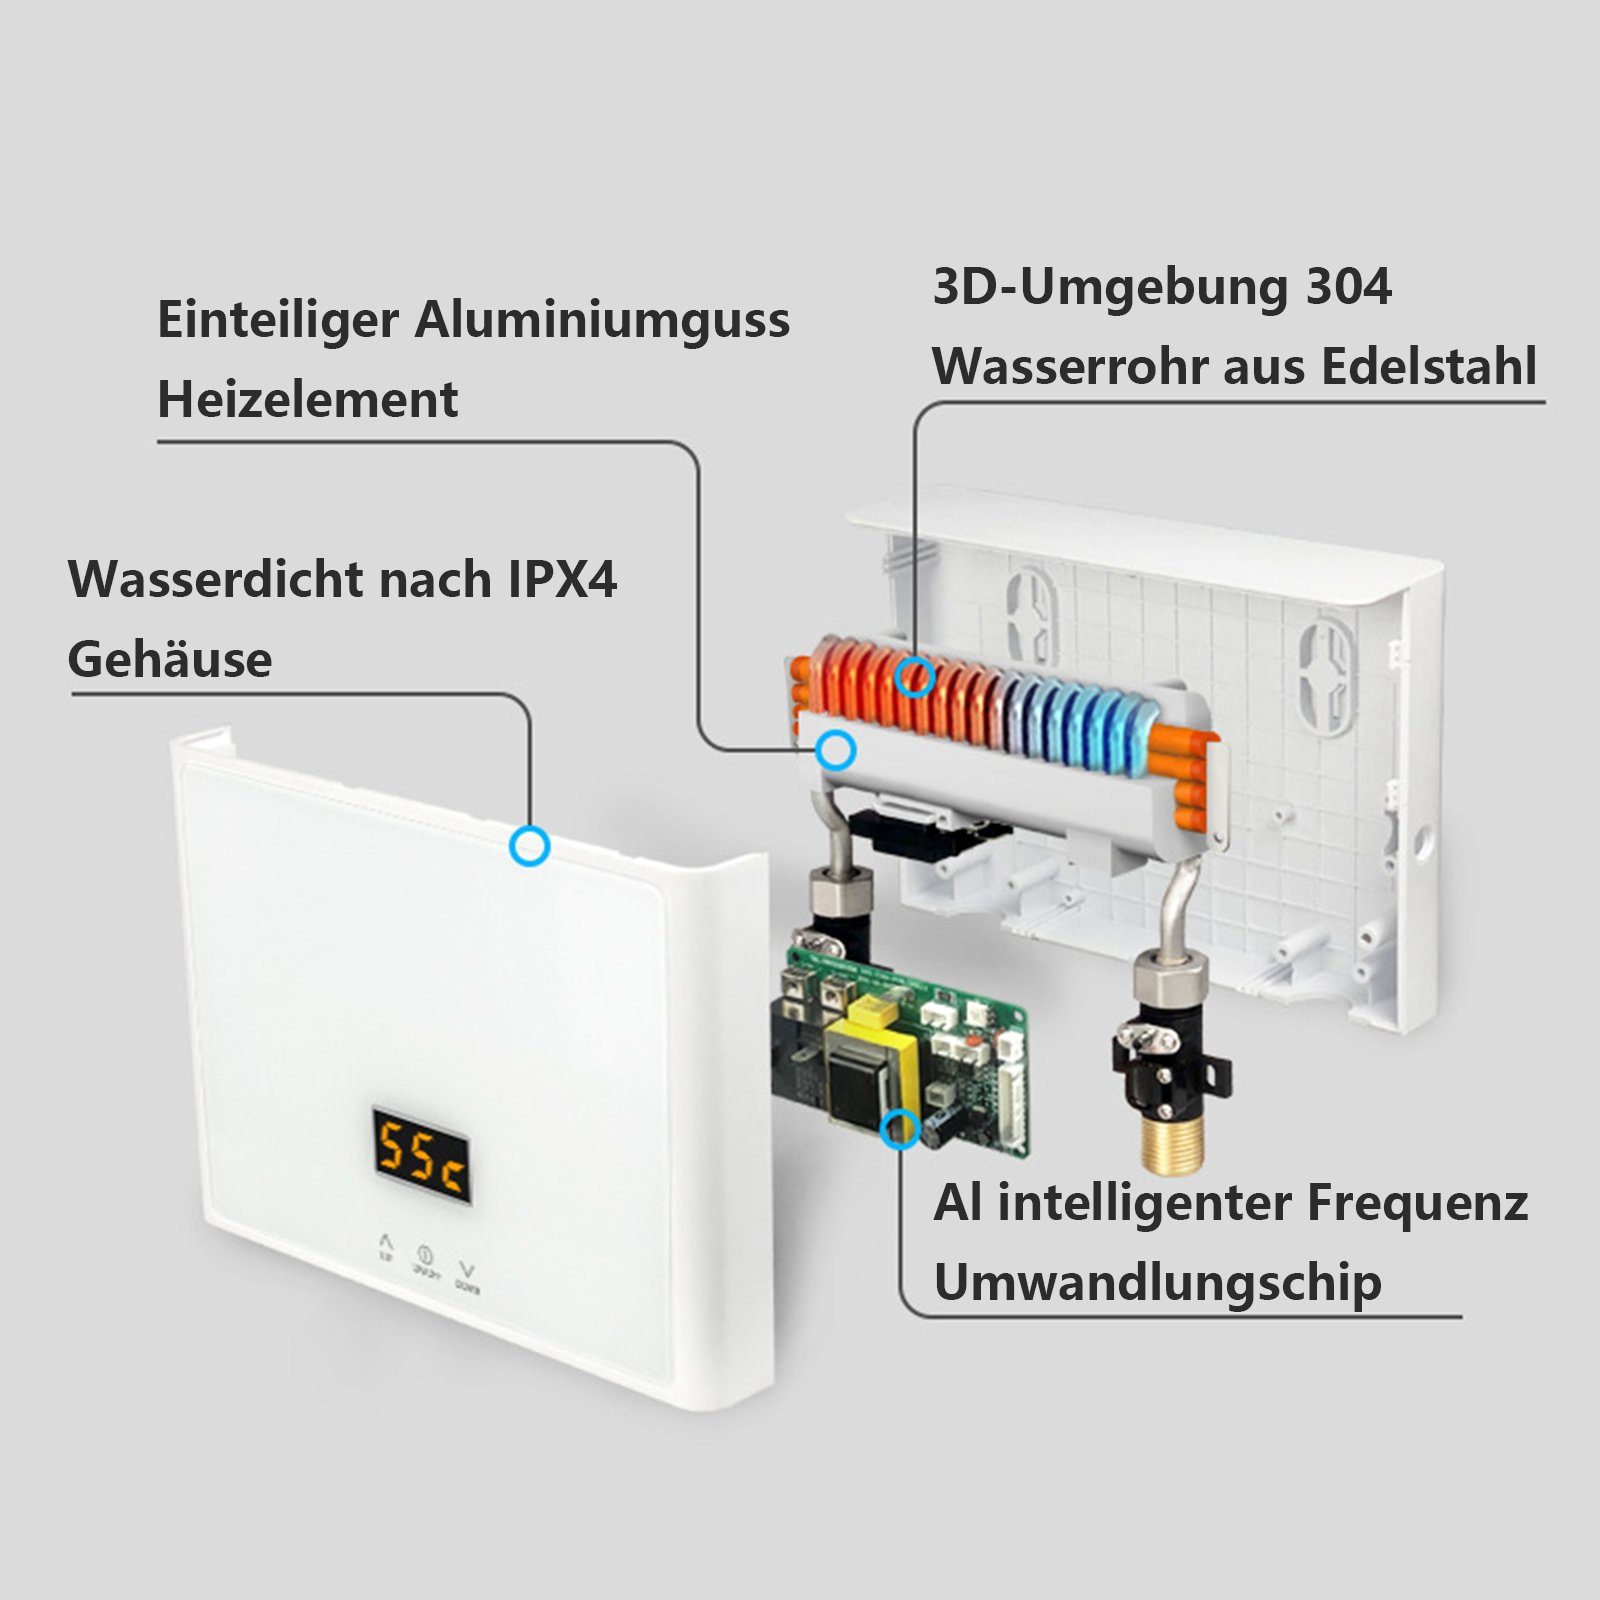 Strom Panel, Durchlauferhitzer Digitalanzeige LED Tankless TWSOUL Durchlauferhitzer Mini 28-55 mit Temperaturauswahl ℃, spart Schwarz